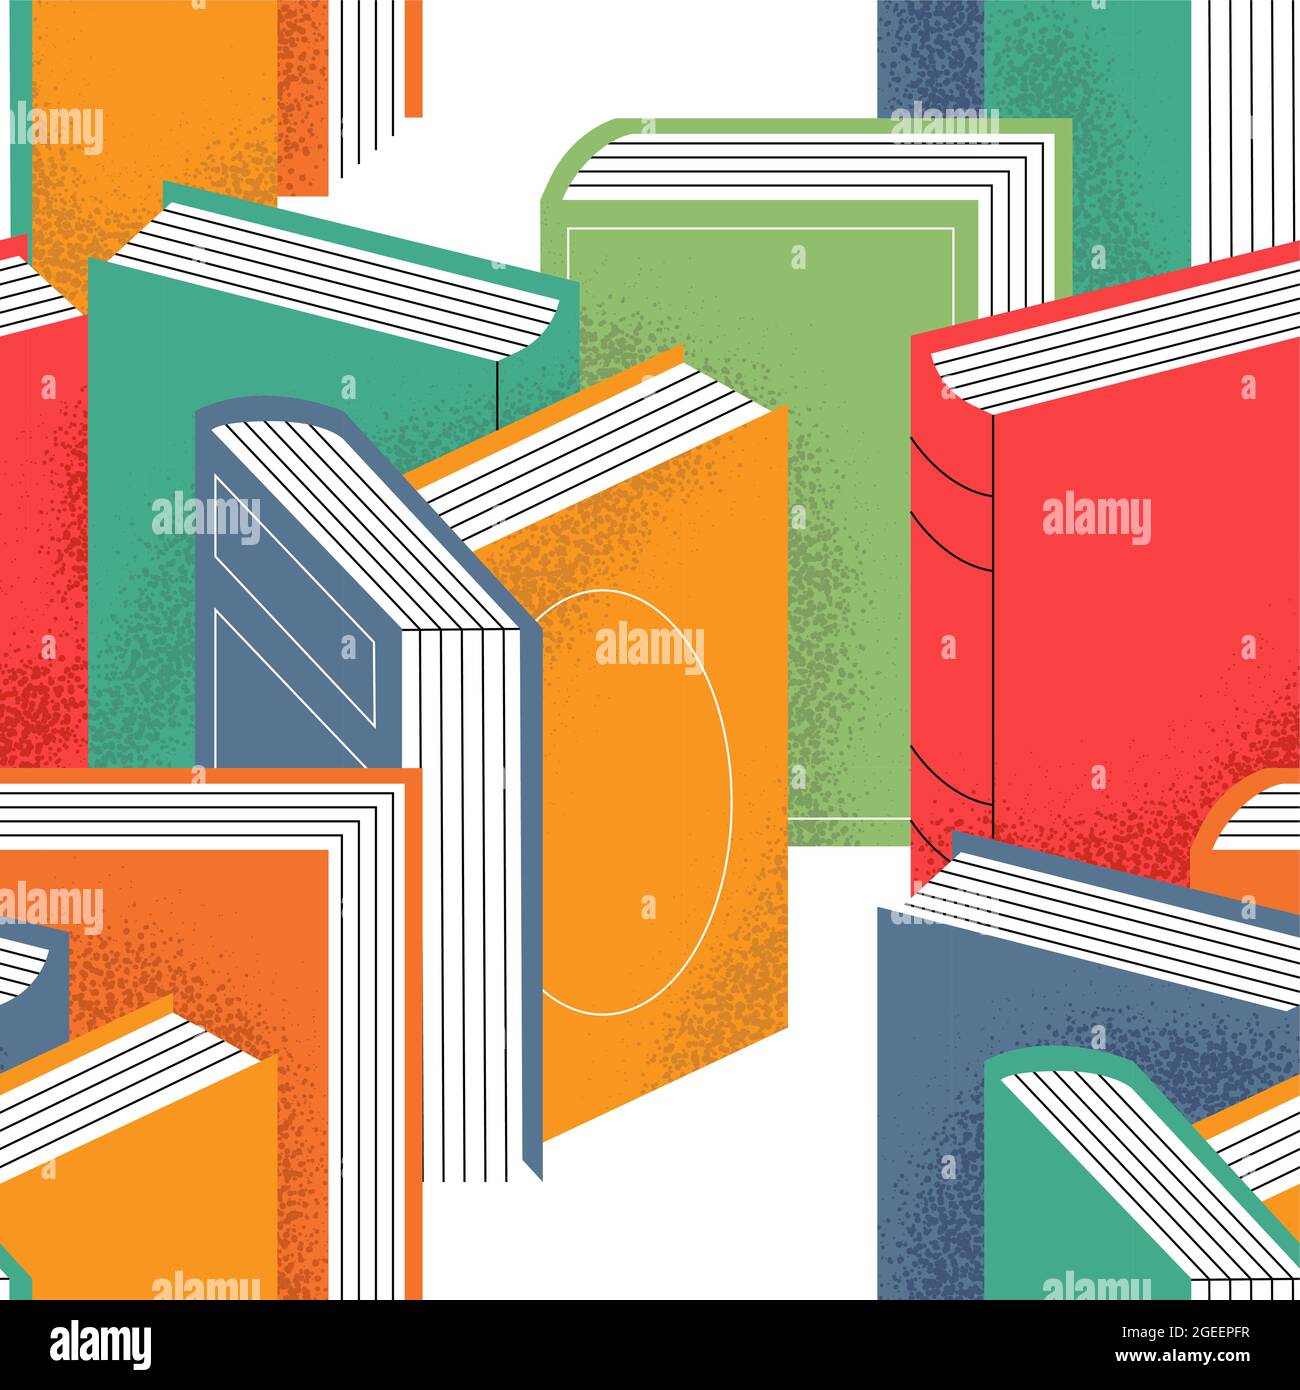 Farbenfrohes Bücherregal mit nahtlosem Muster. Lesen Bücher Cartoon Hintergrund für Buchhandlung oder Bildung Event Wallpaper Konzept. Stock Vektor